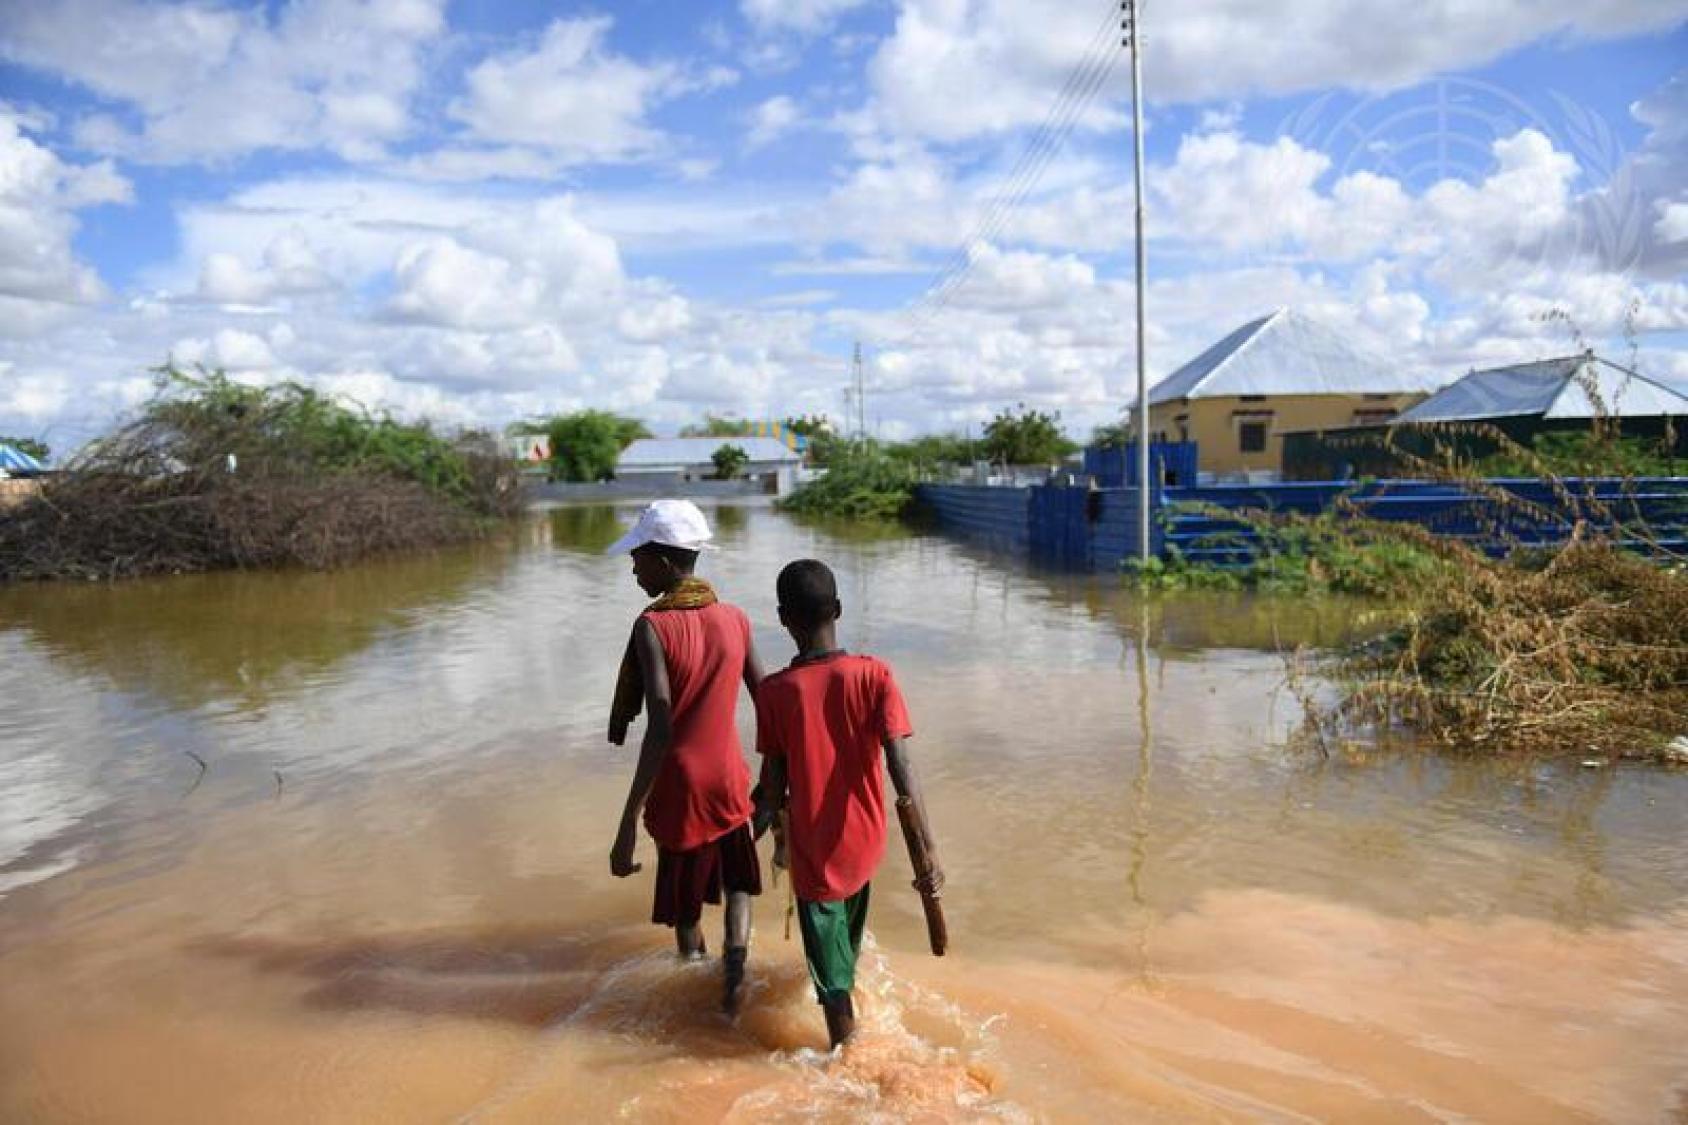 Dos niños caminan por una zona inundada cerca de viviendas.